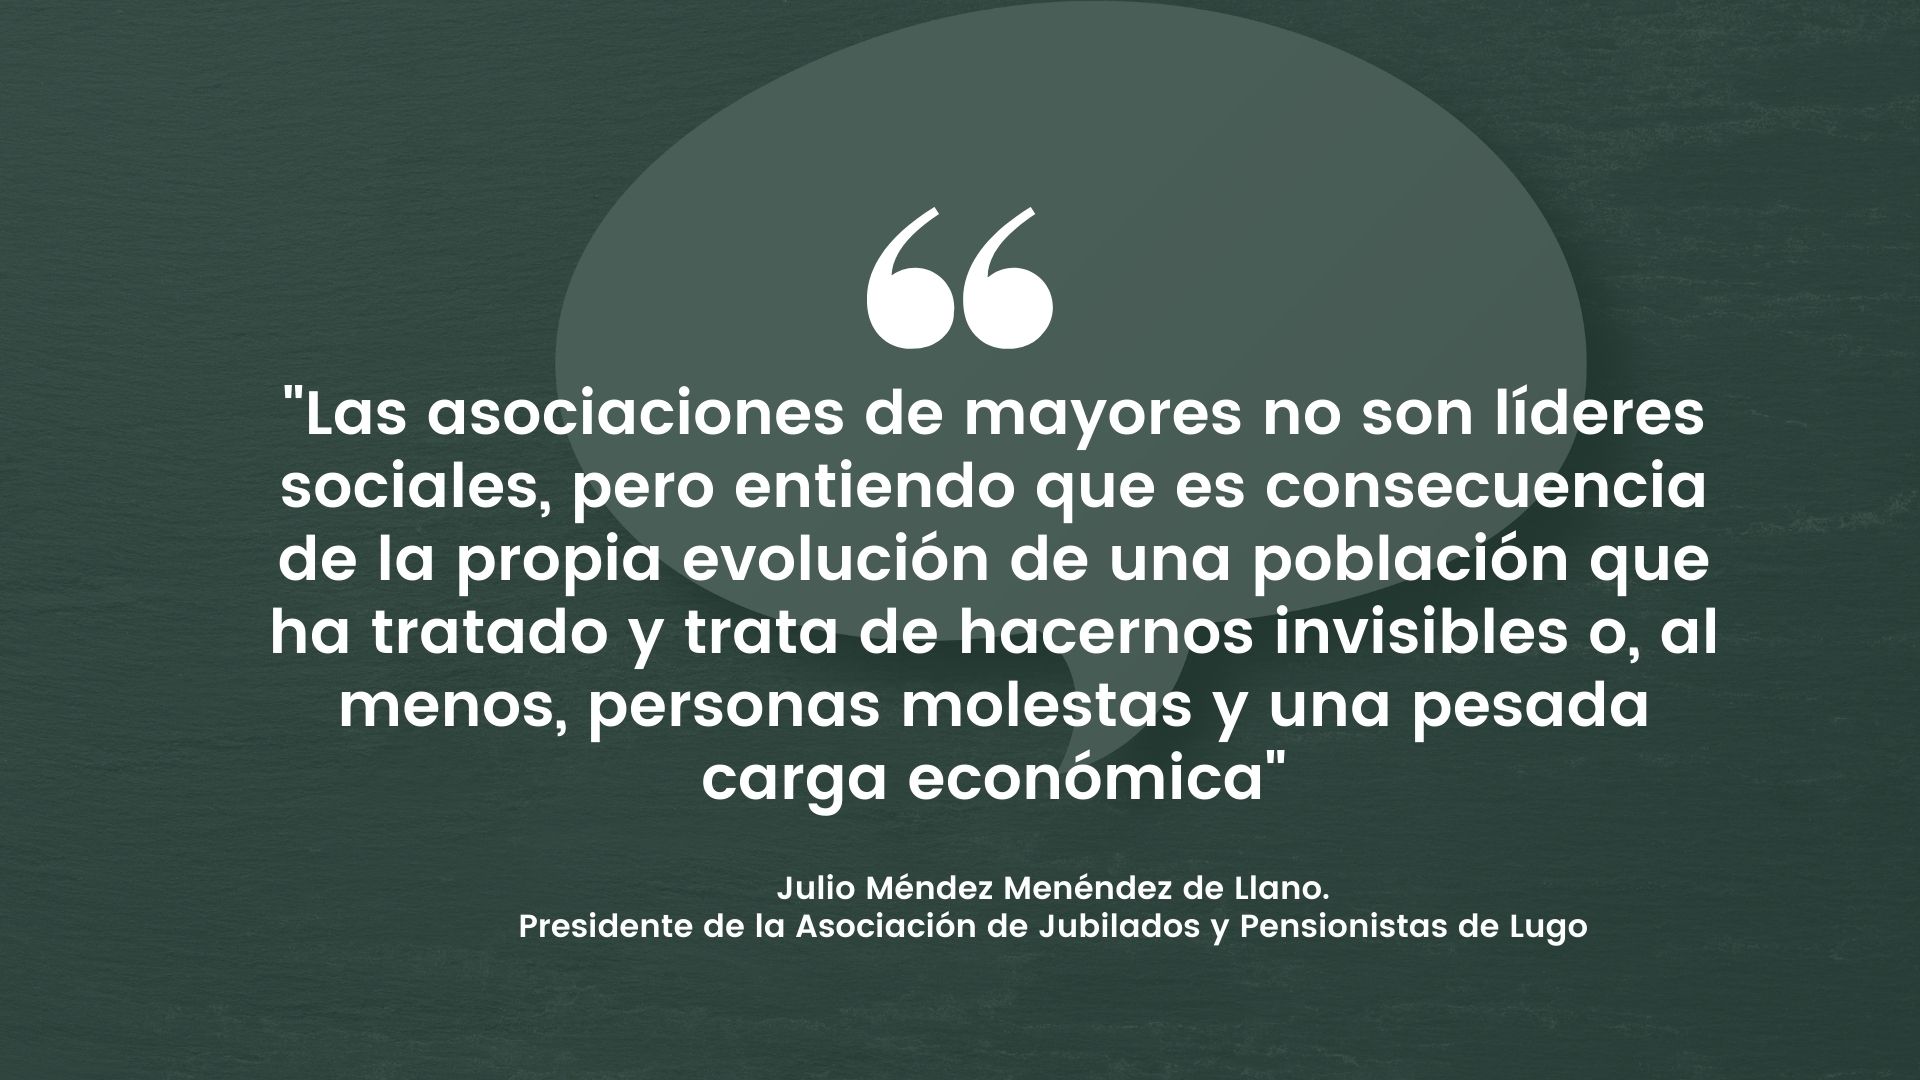 ¿Qué hacemos las asociaciones de mayores?, por Julio Méndez, presidente de la Asociación de Jubilados y Pensionistas de Lugo